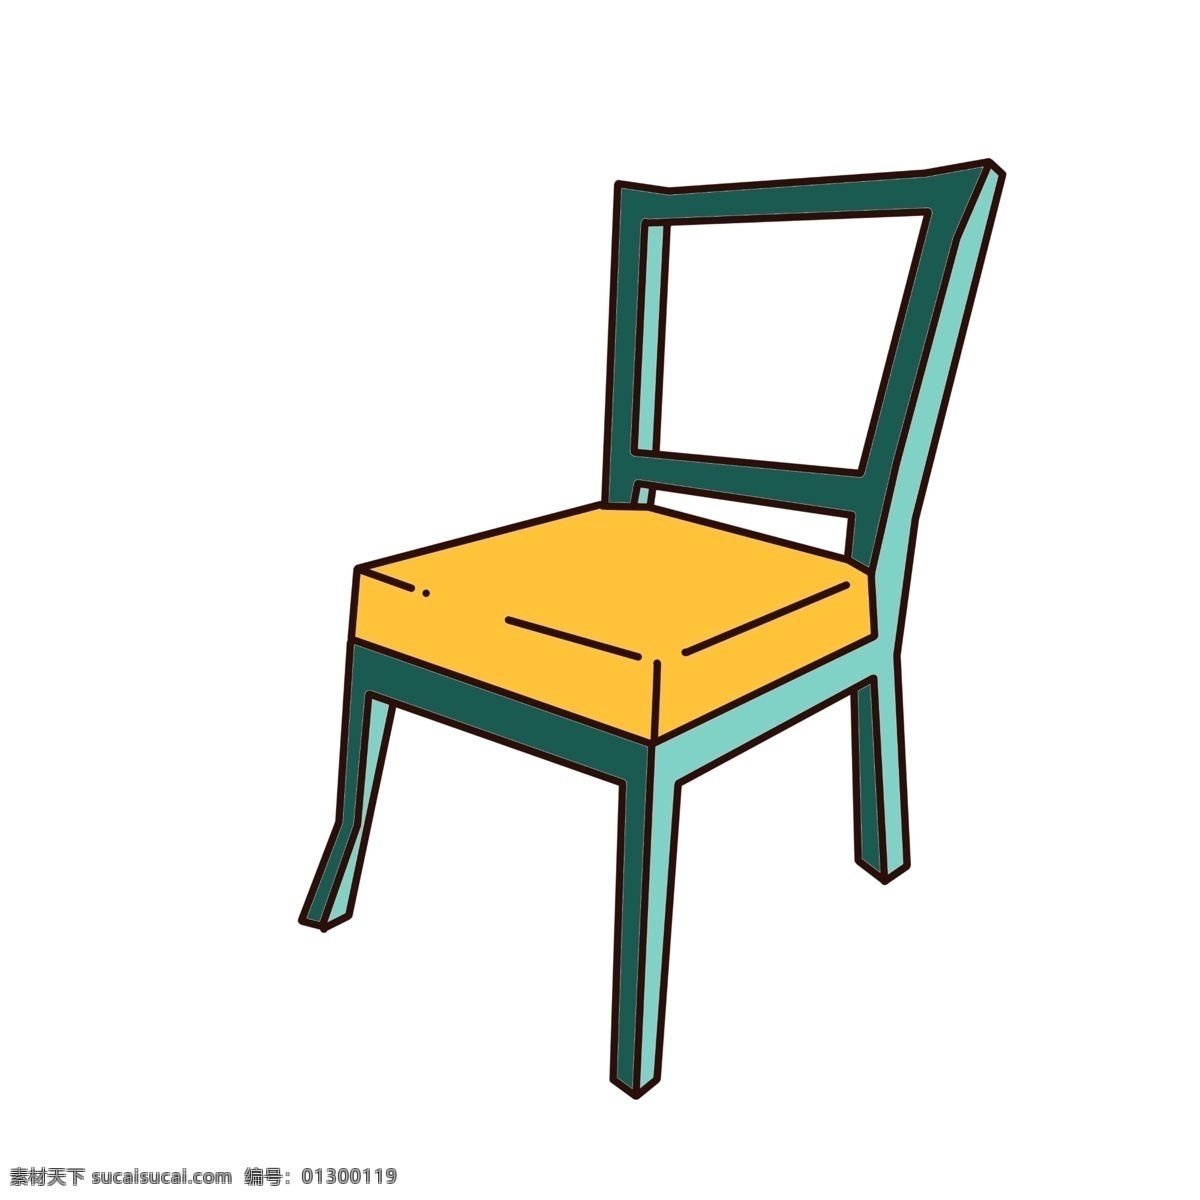 木质 椅子 装饰 插画 蓝色的椅子 木质椅子 漂亮的椅子 创意椅子 立体椅子 精美椅子 家具椅子